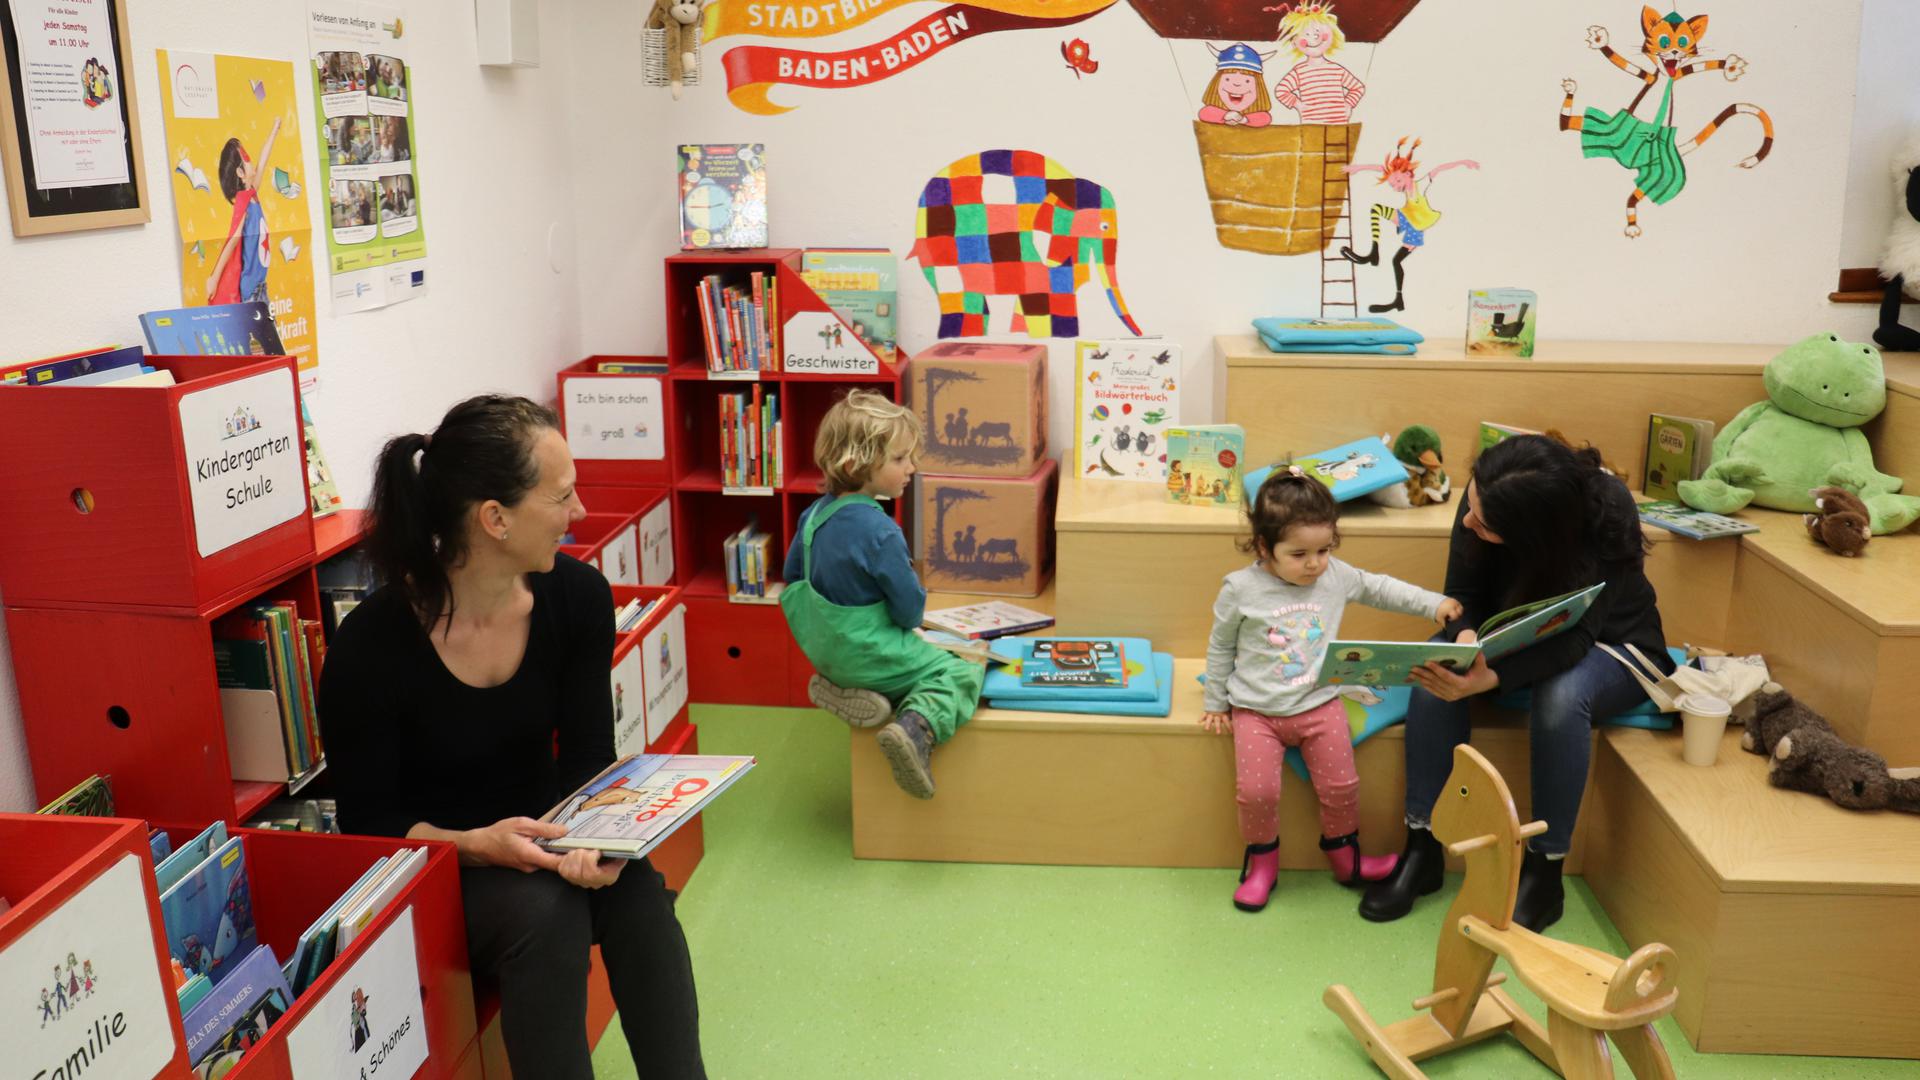 Hier halten sich Nachwuchsleser gerne auf: Die Kinderbibliothek der Baden-Badener Stadtbibliothek hat sich besonders gut entwickelt.